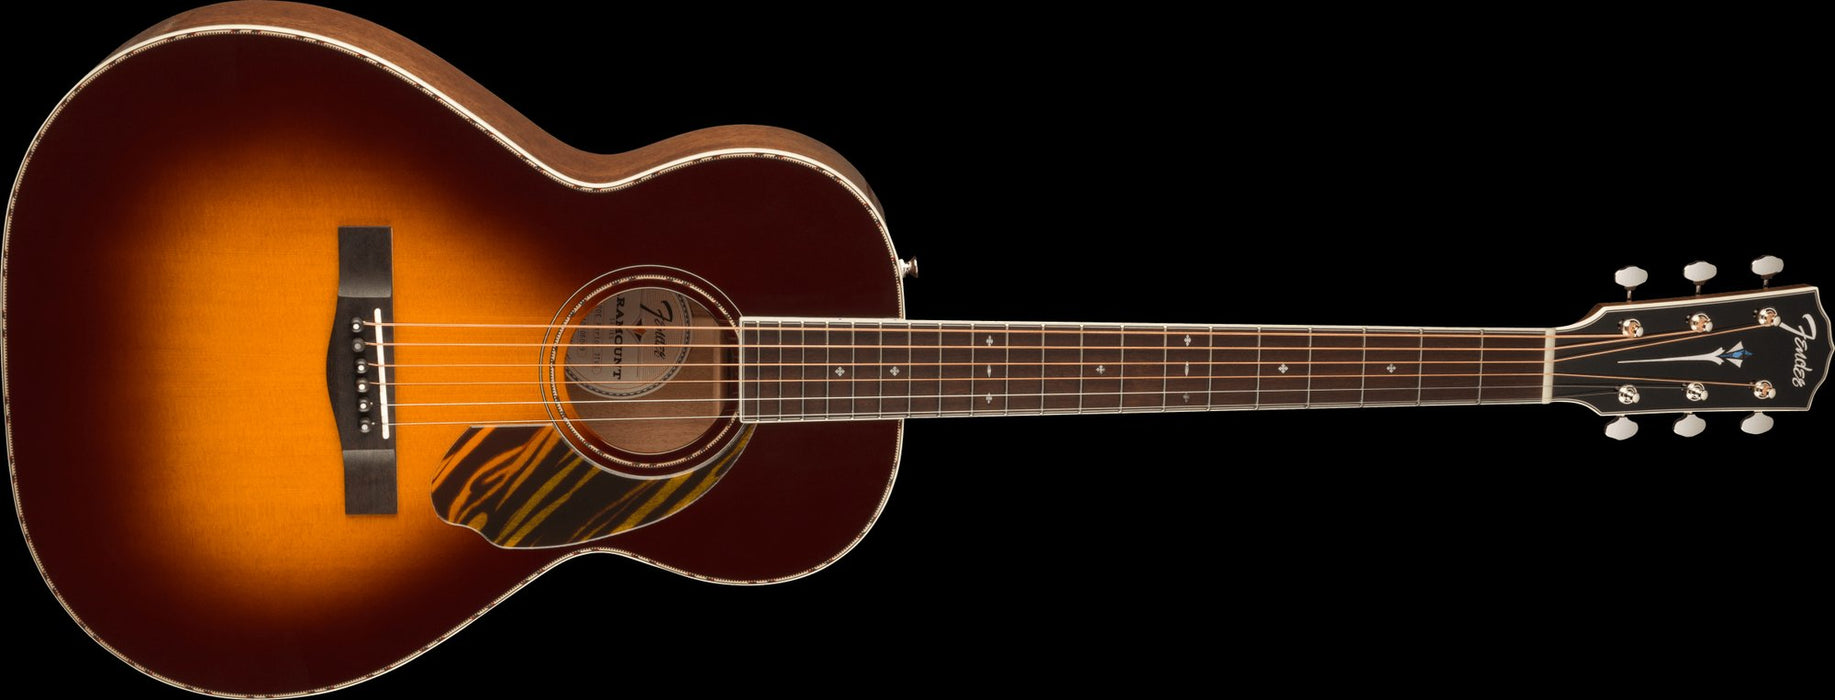 Fender PS-220E Parlor, Ovangkol Fingerboard, 3-Tone Vintage Sunburst Acoustic Guitars